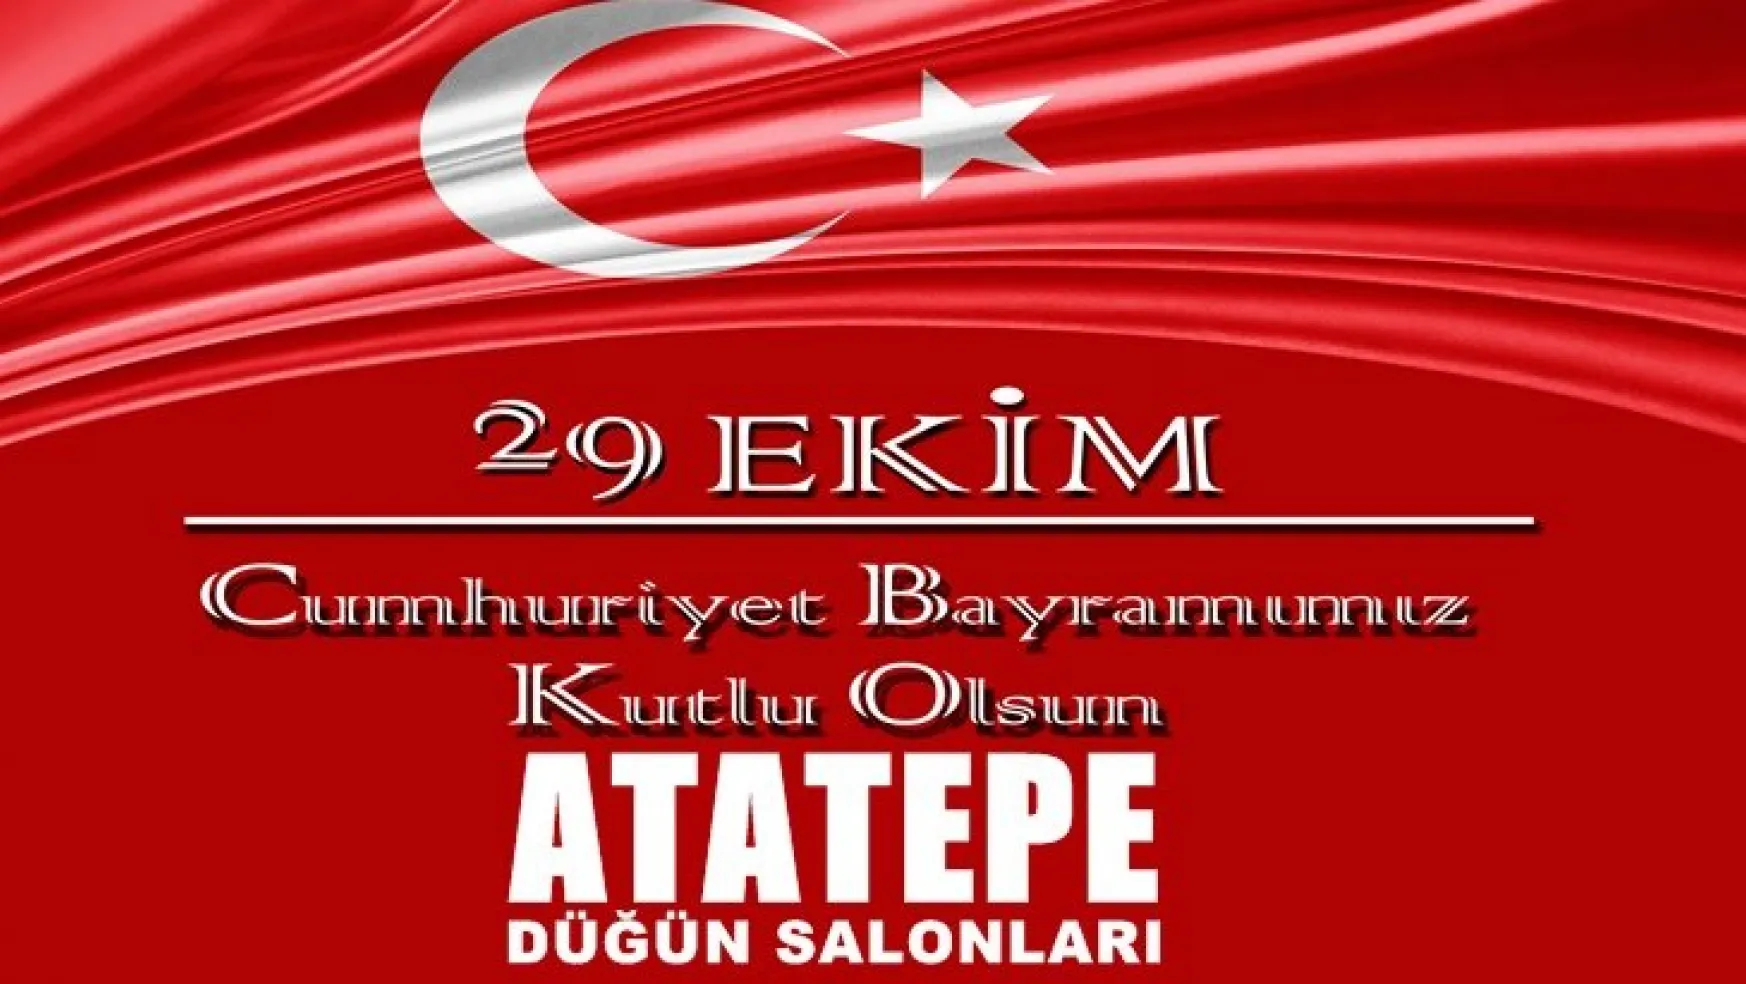 Atatepe Kır Düğün Solanları'ndan 29 Ekim Mesajı